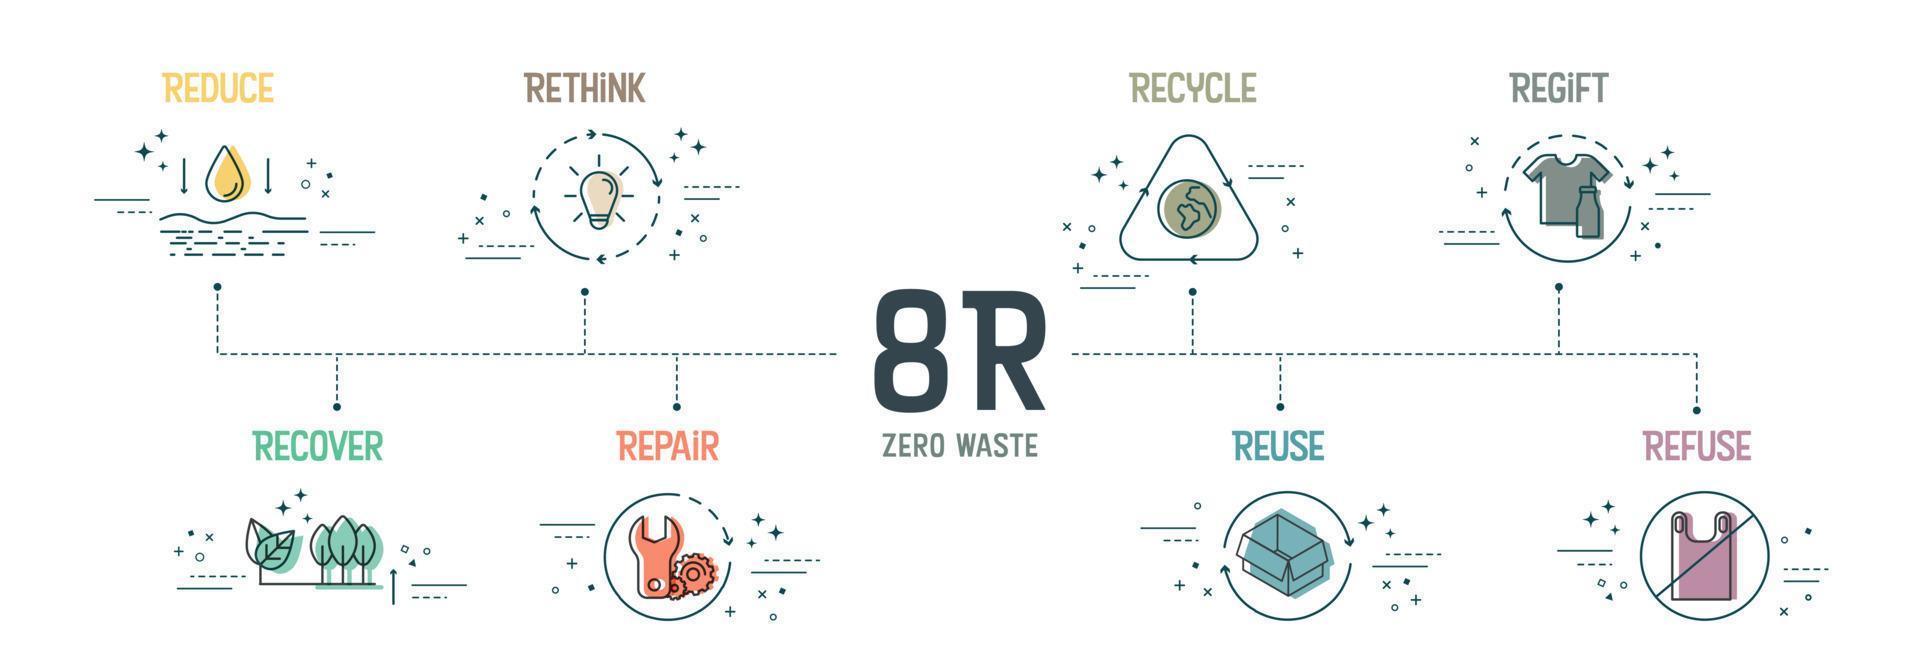 zéro déchet avec le concept 8r a 8 étapes à analyser telles que réduire, repenser, recycler, redonner, récupérer, réparer, réutiliser et refuser pour la durabilité environnementale. vecteur infographique. bannière avec icône.